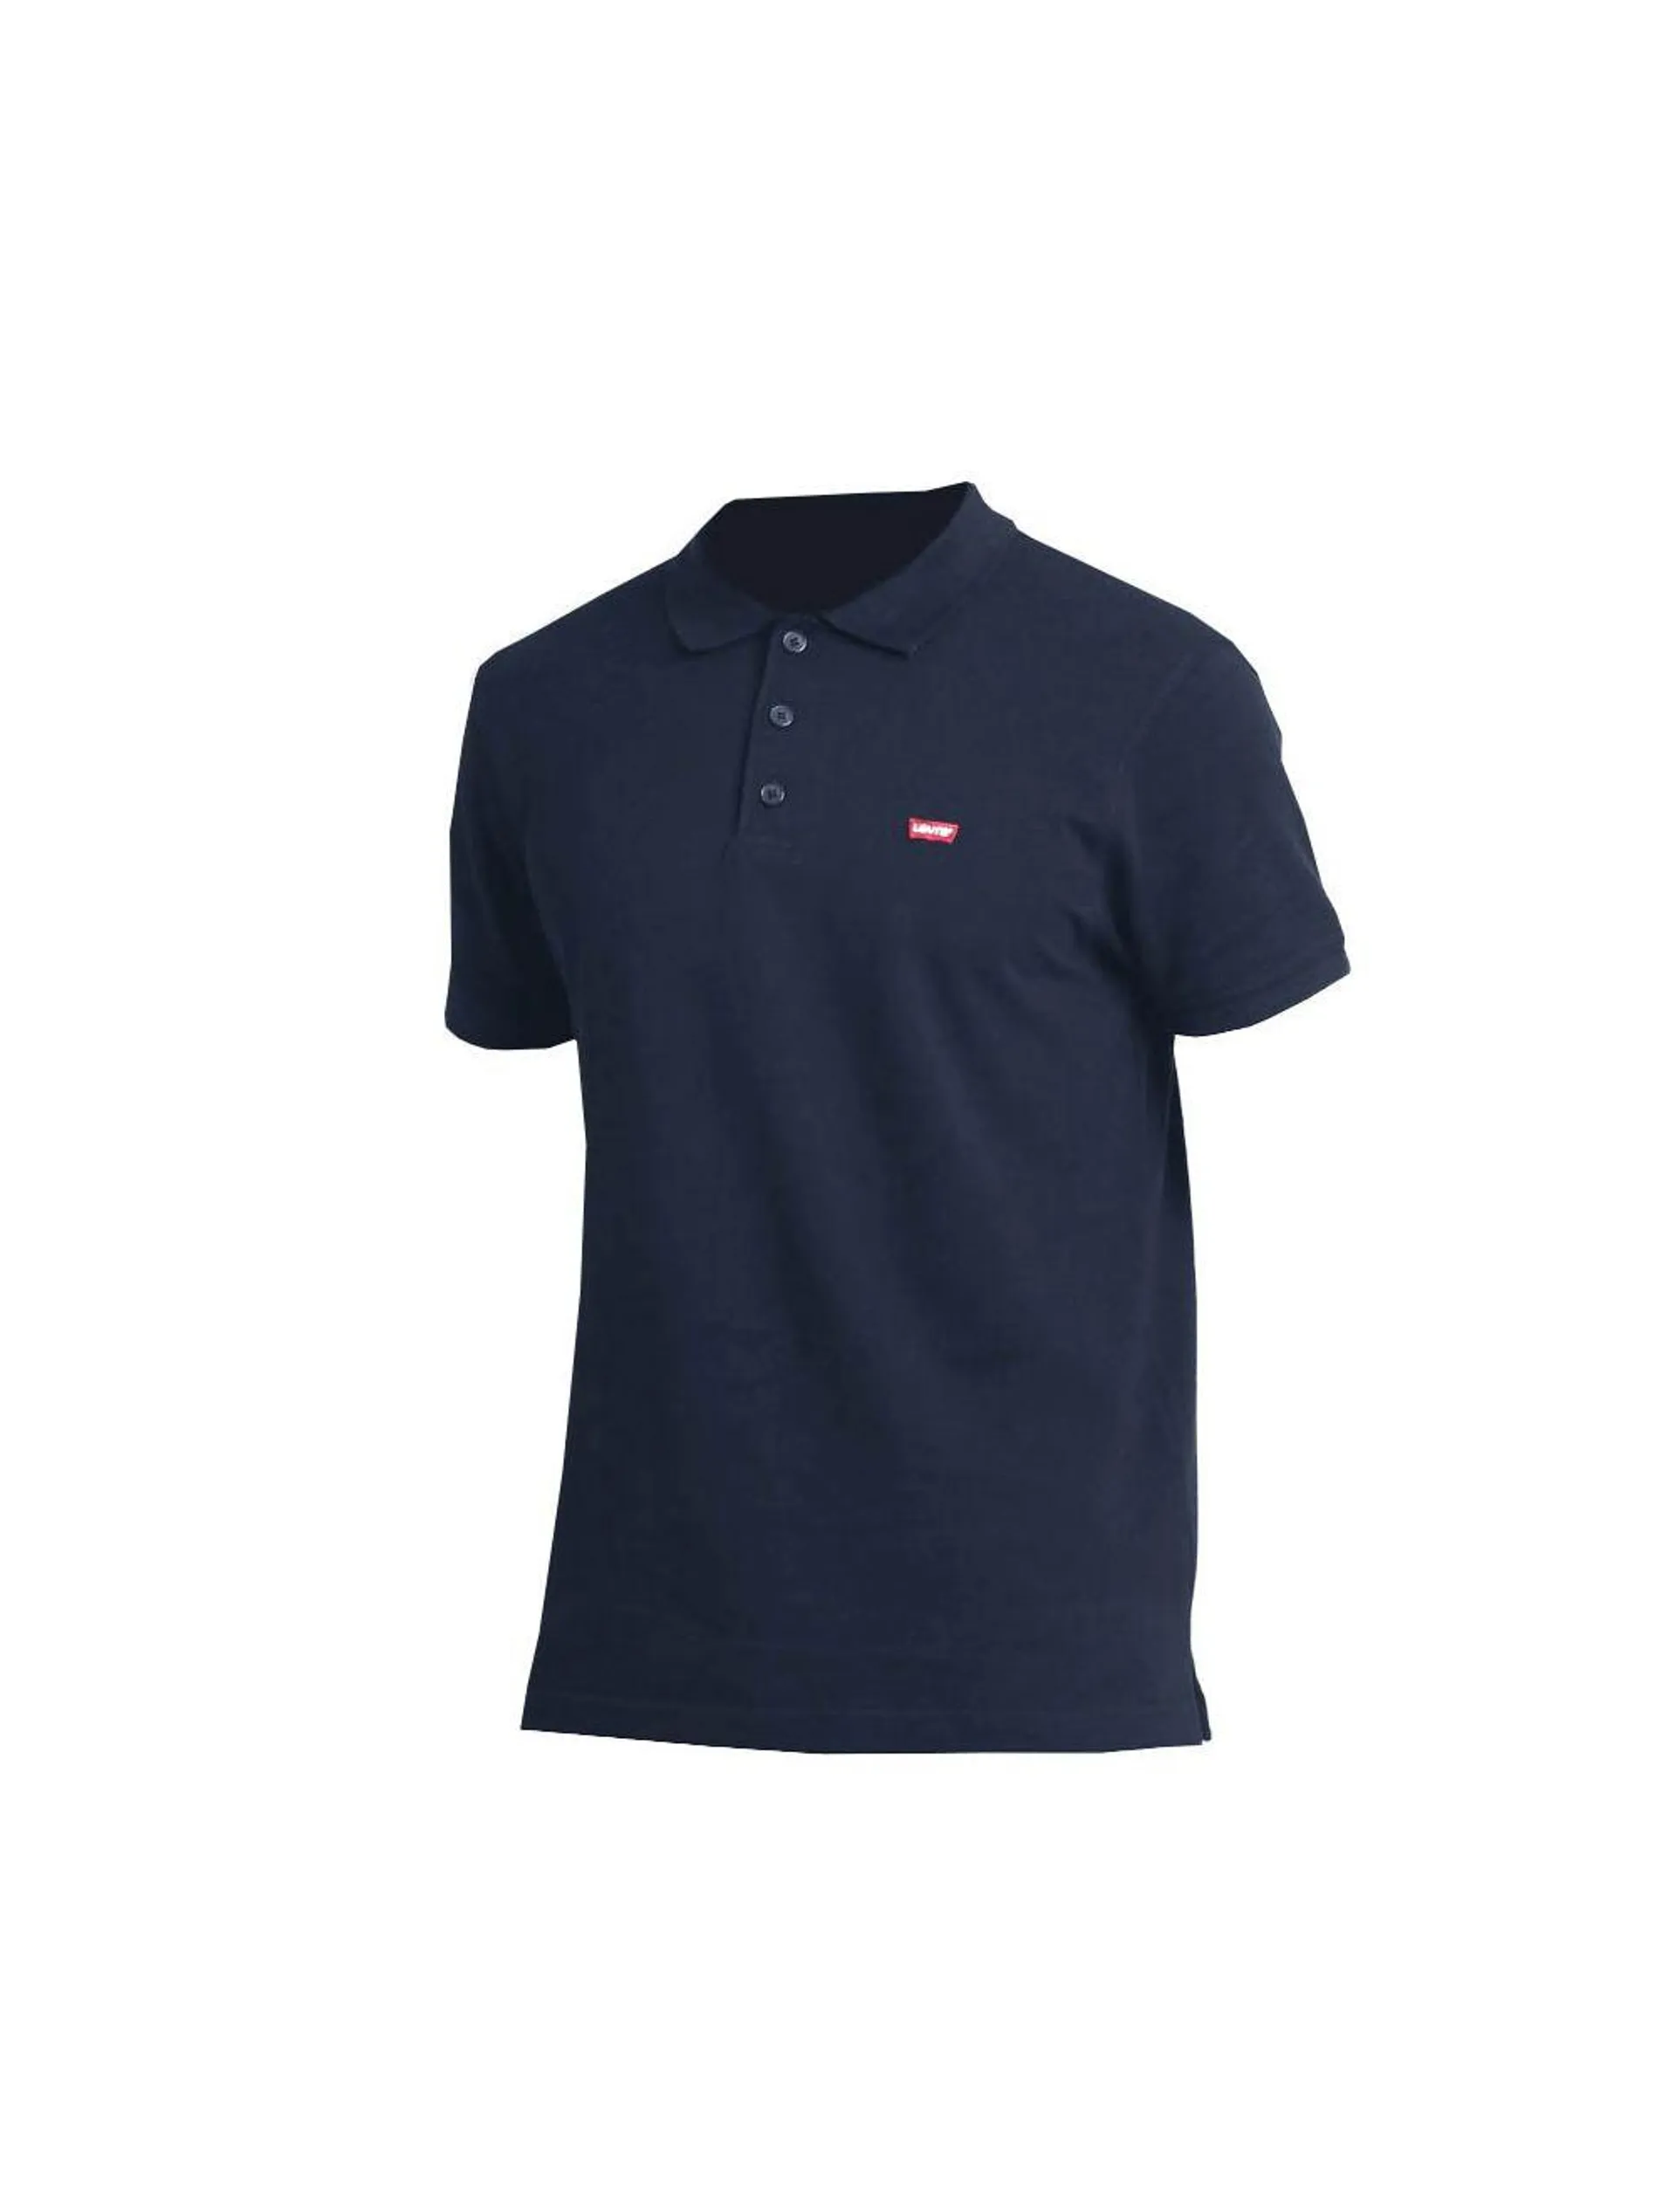 Levi's Housemark Golf Shirt Dress Blue